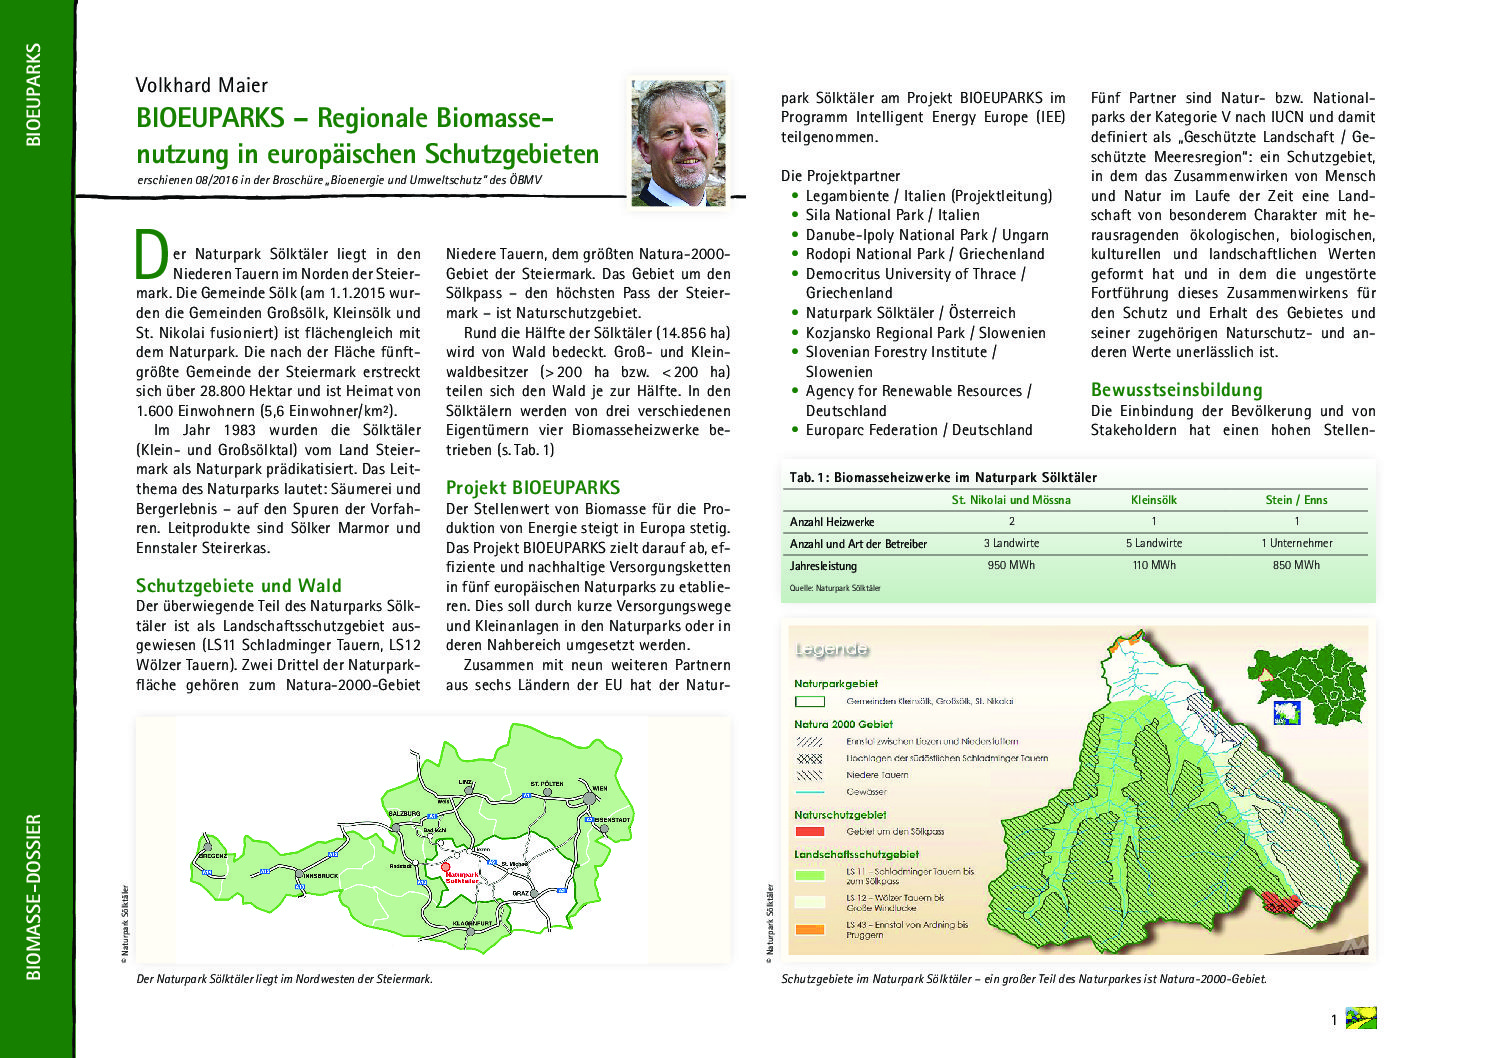 BIOEUPARKS – Regionale Biomassenutzung in europäischen Schutzgebieten